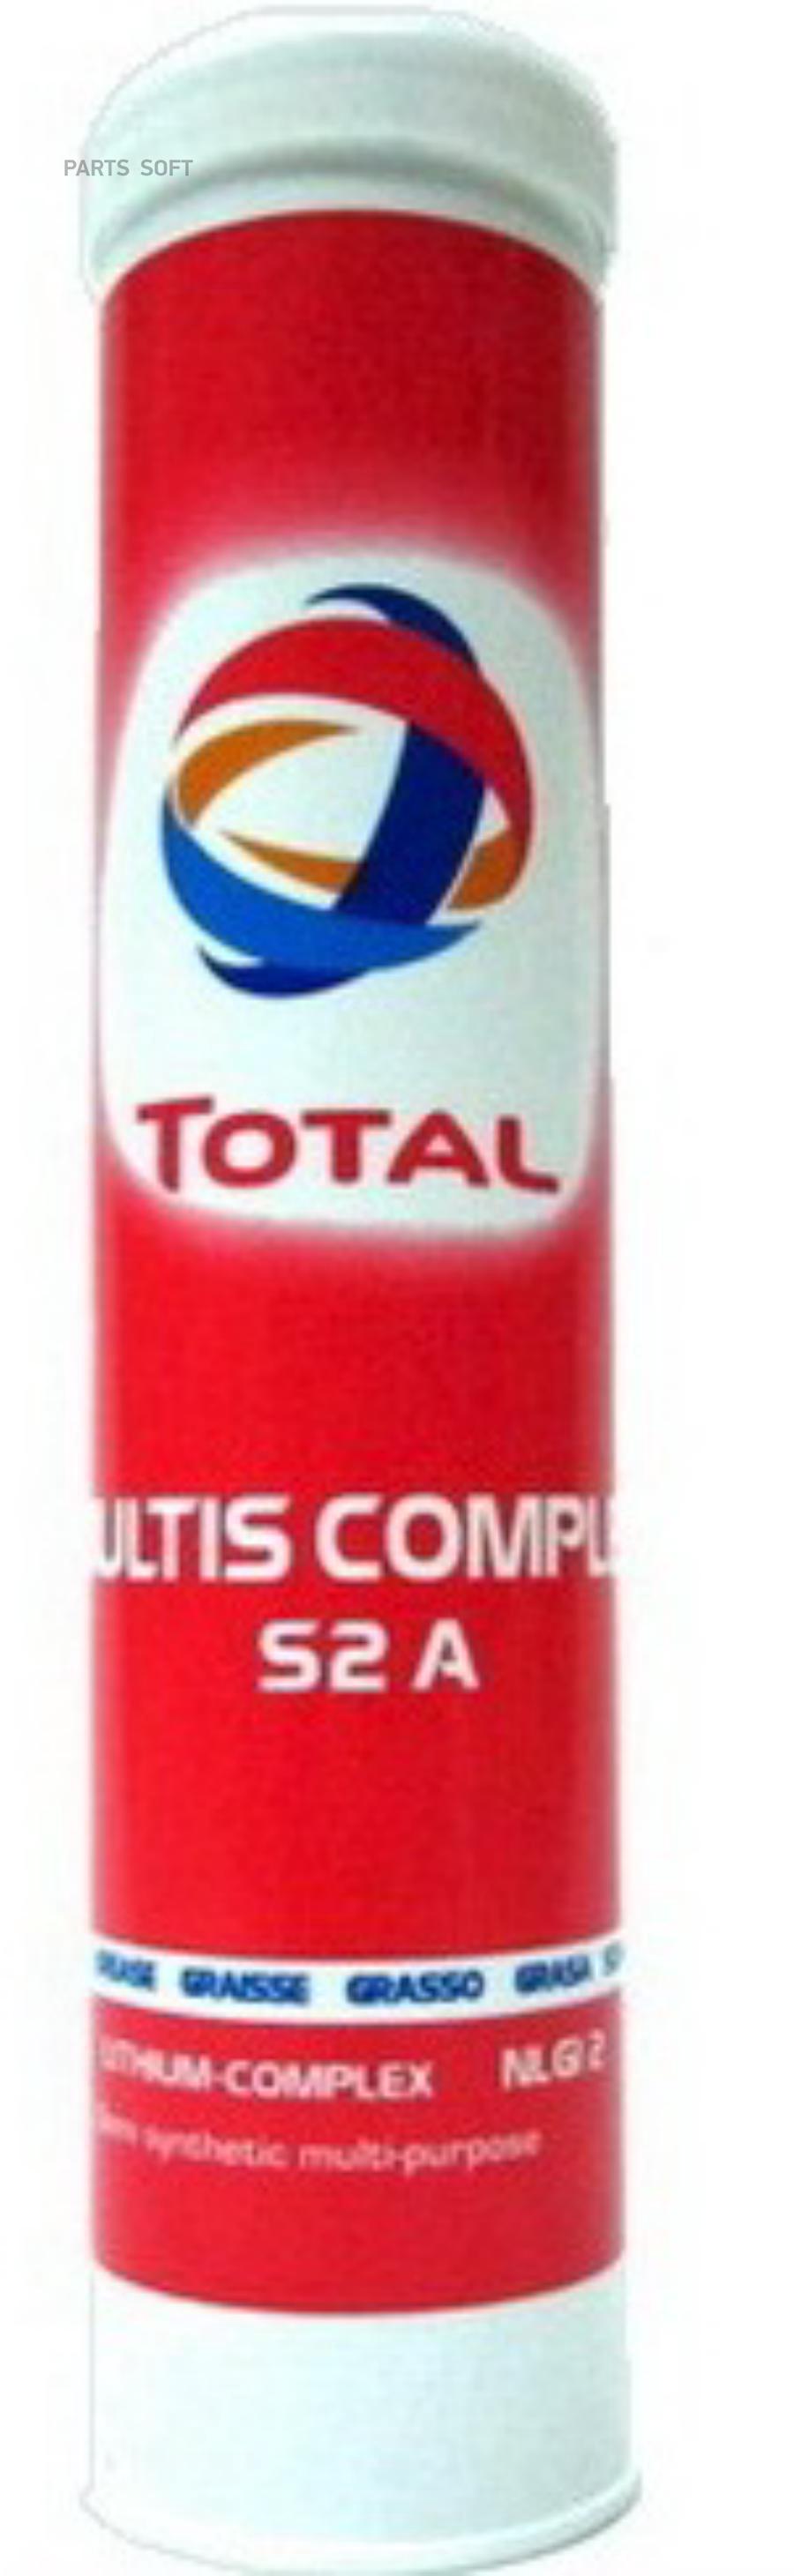 160833 TOTAL Универсальная смазка Multis Complex S2A